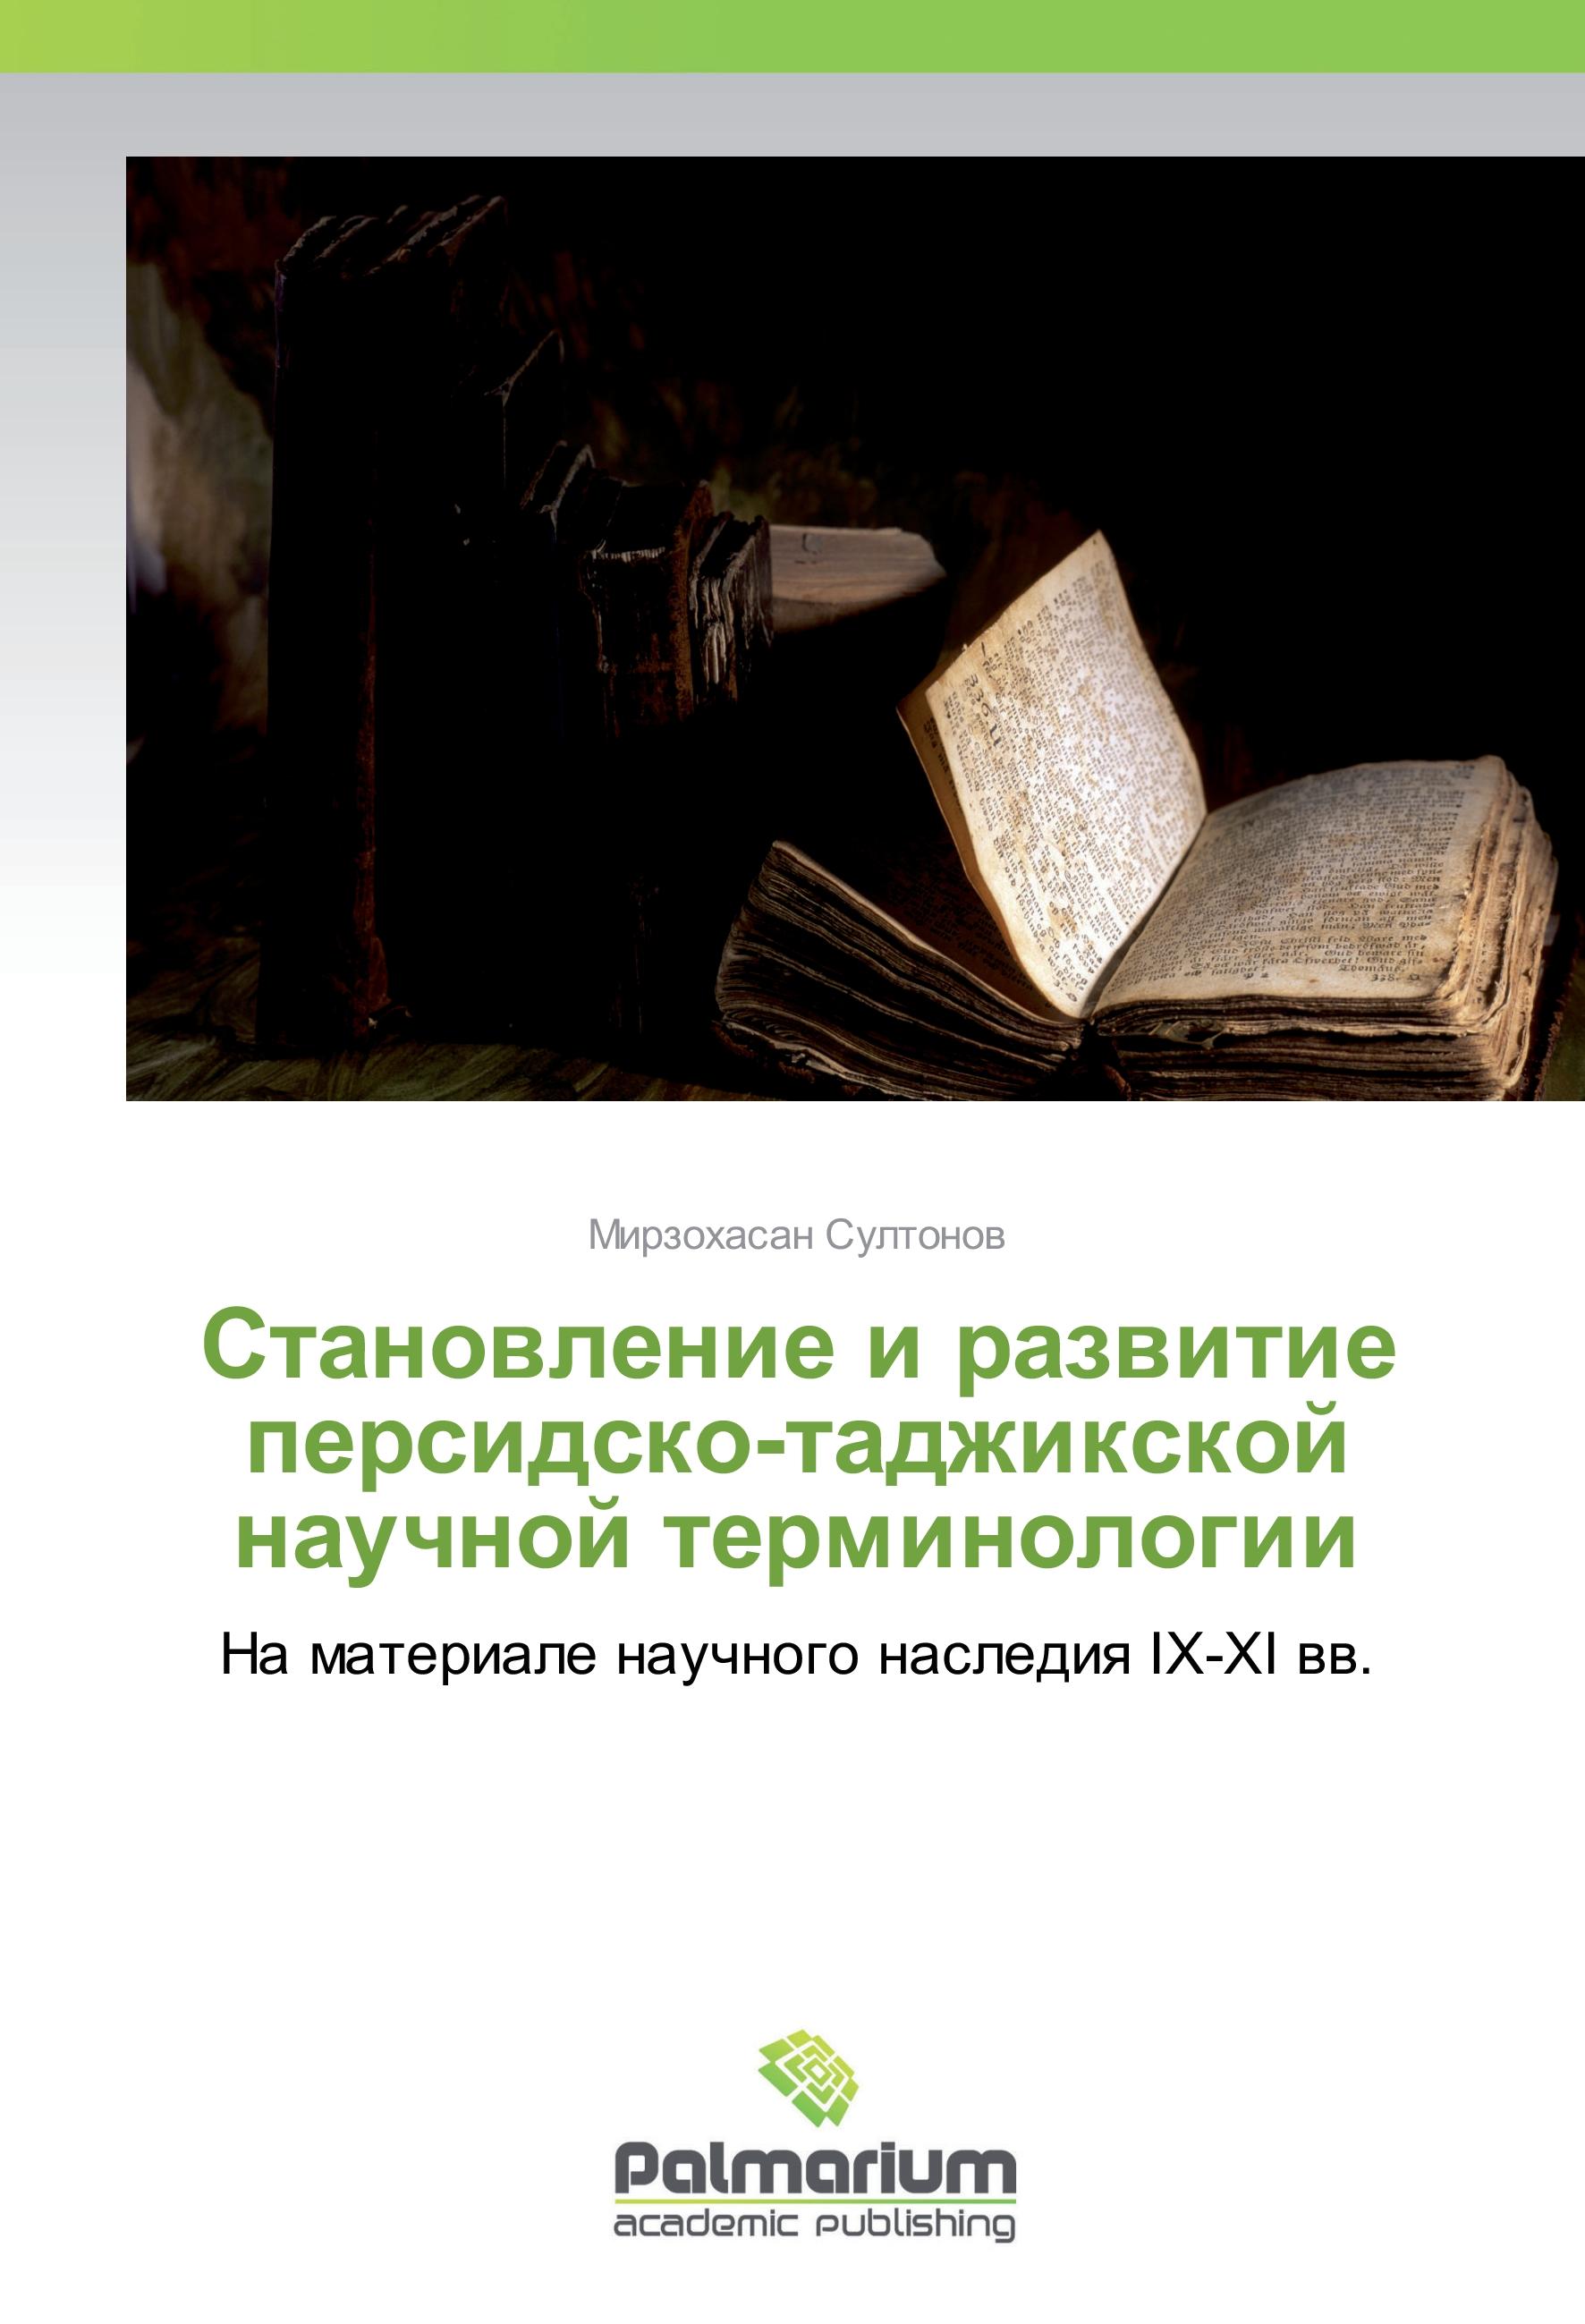 Stanovlenie i razvitie persidsko-tadzhixkoj nauchnoj terminologii